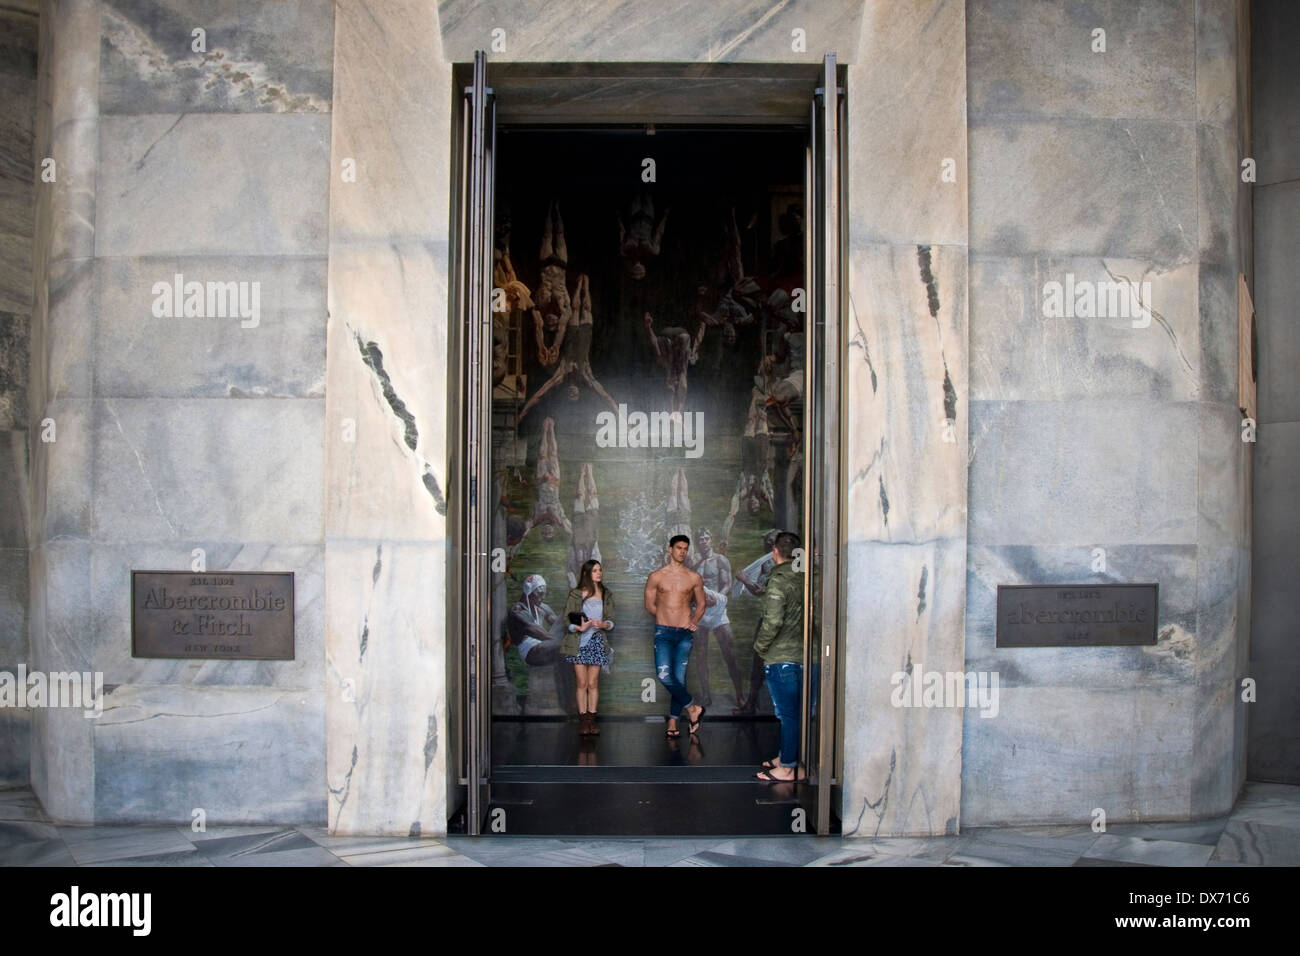 Italy, Milan, Abercrombie & Ficht fashion store Stock Photo - Alamy